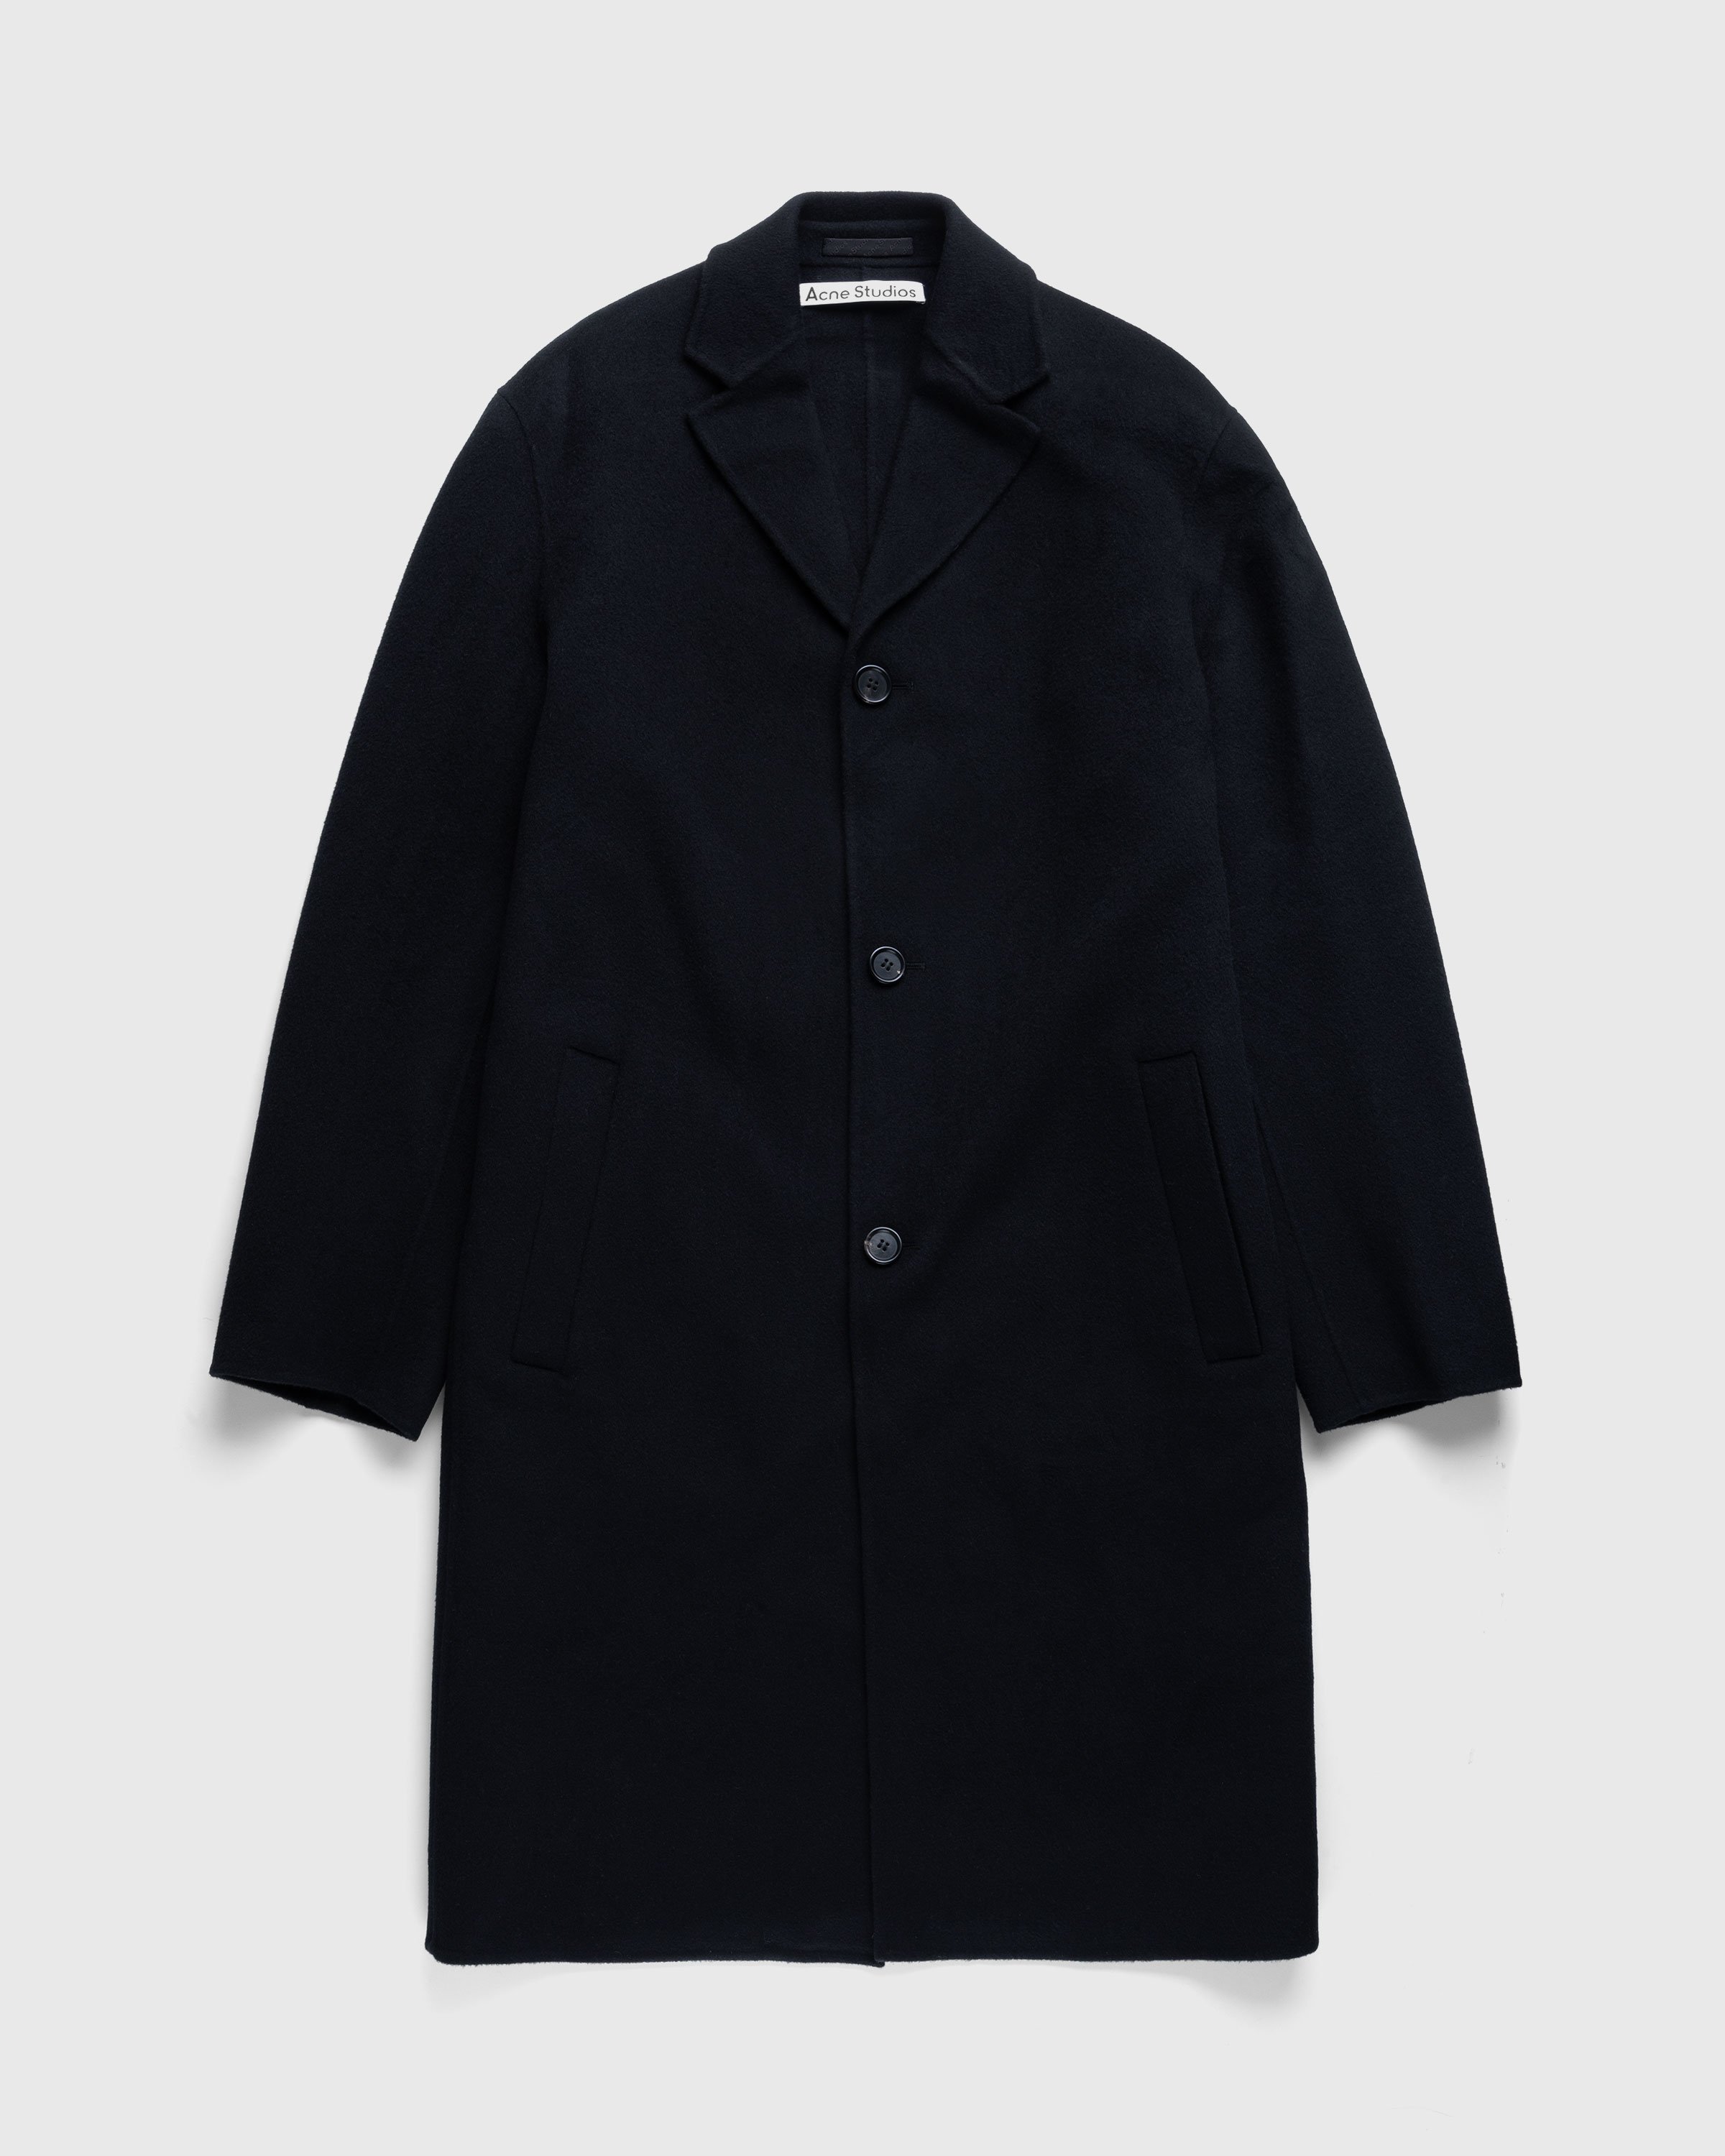 Acne Studios - Single-Breasted Coat Black - Clothing - Black - Image 1